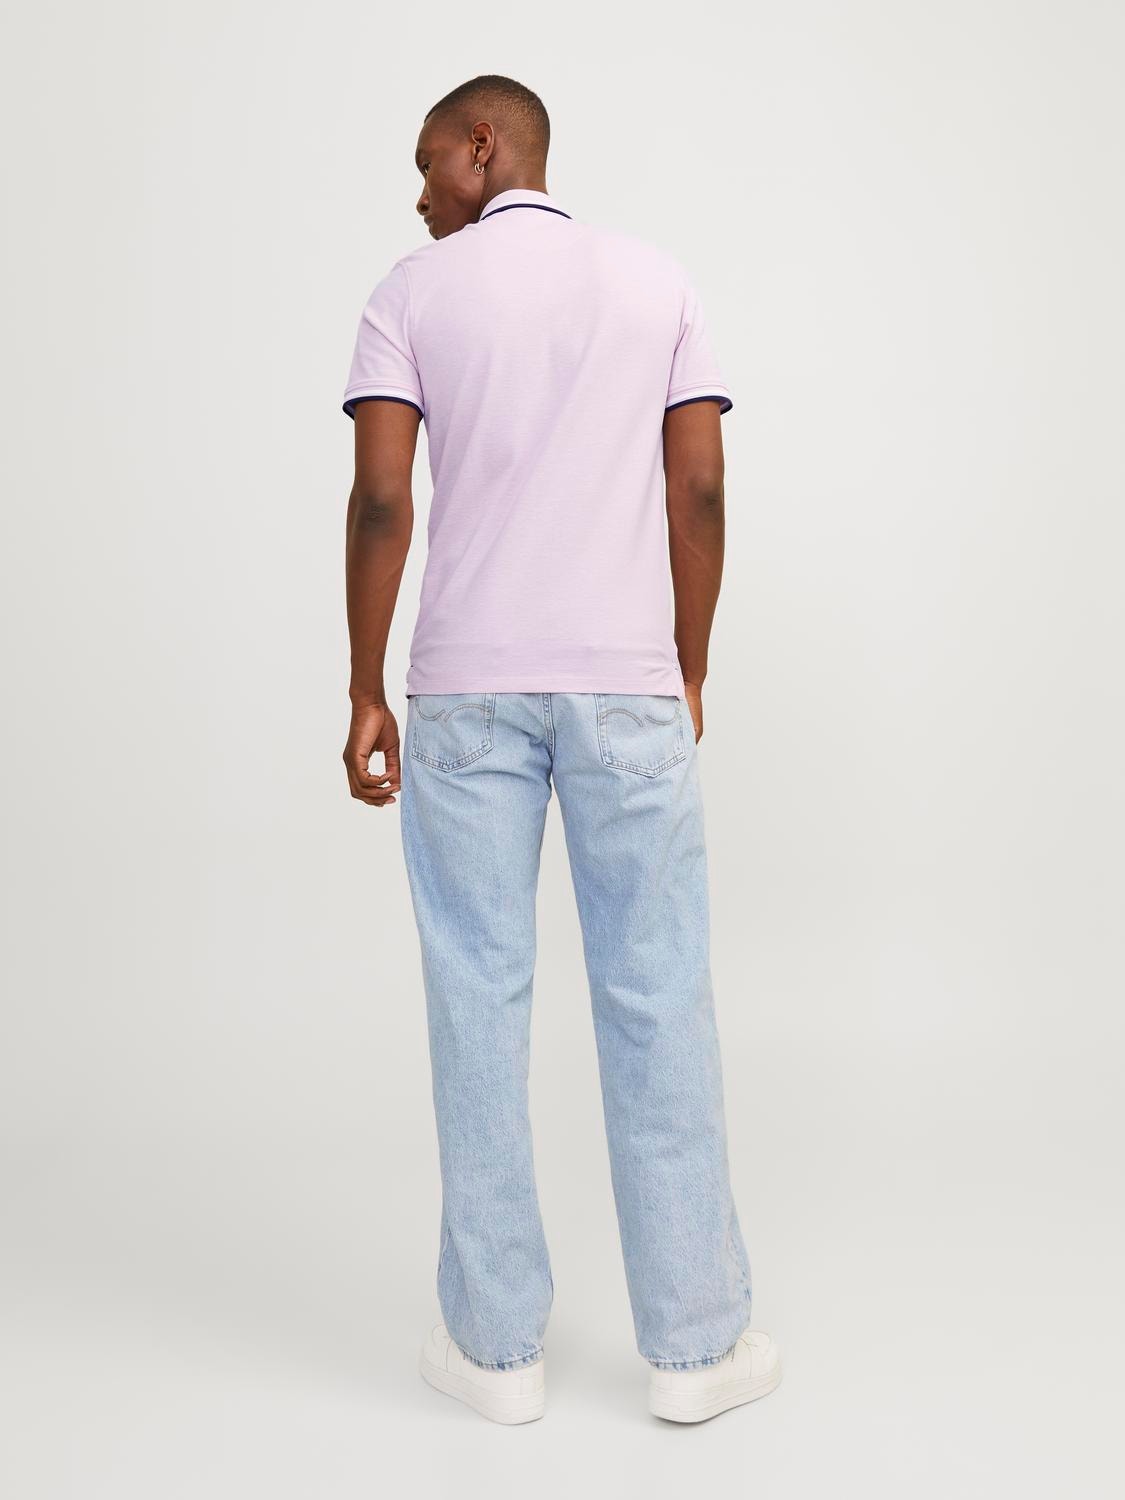 Jack & Jones Vanlig Polo T-skjorte -Pink Nectar - 12136668